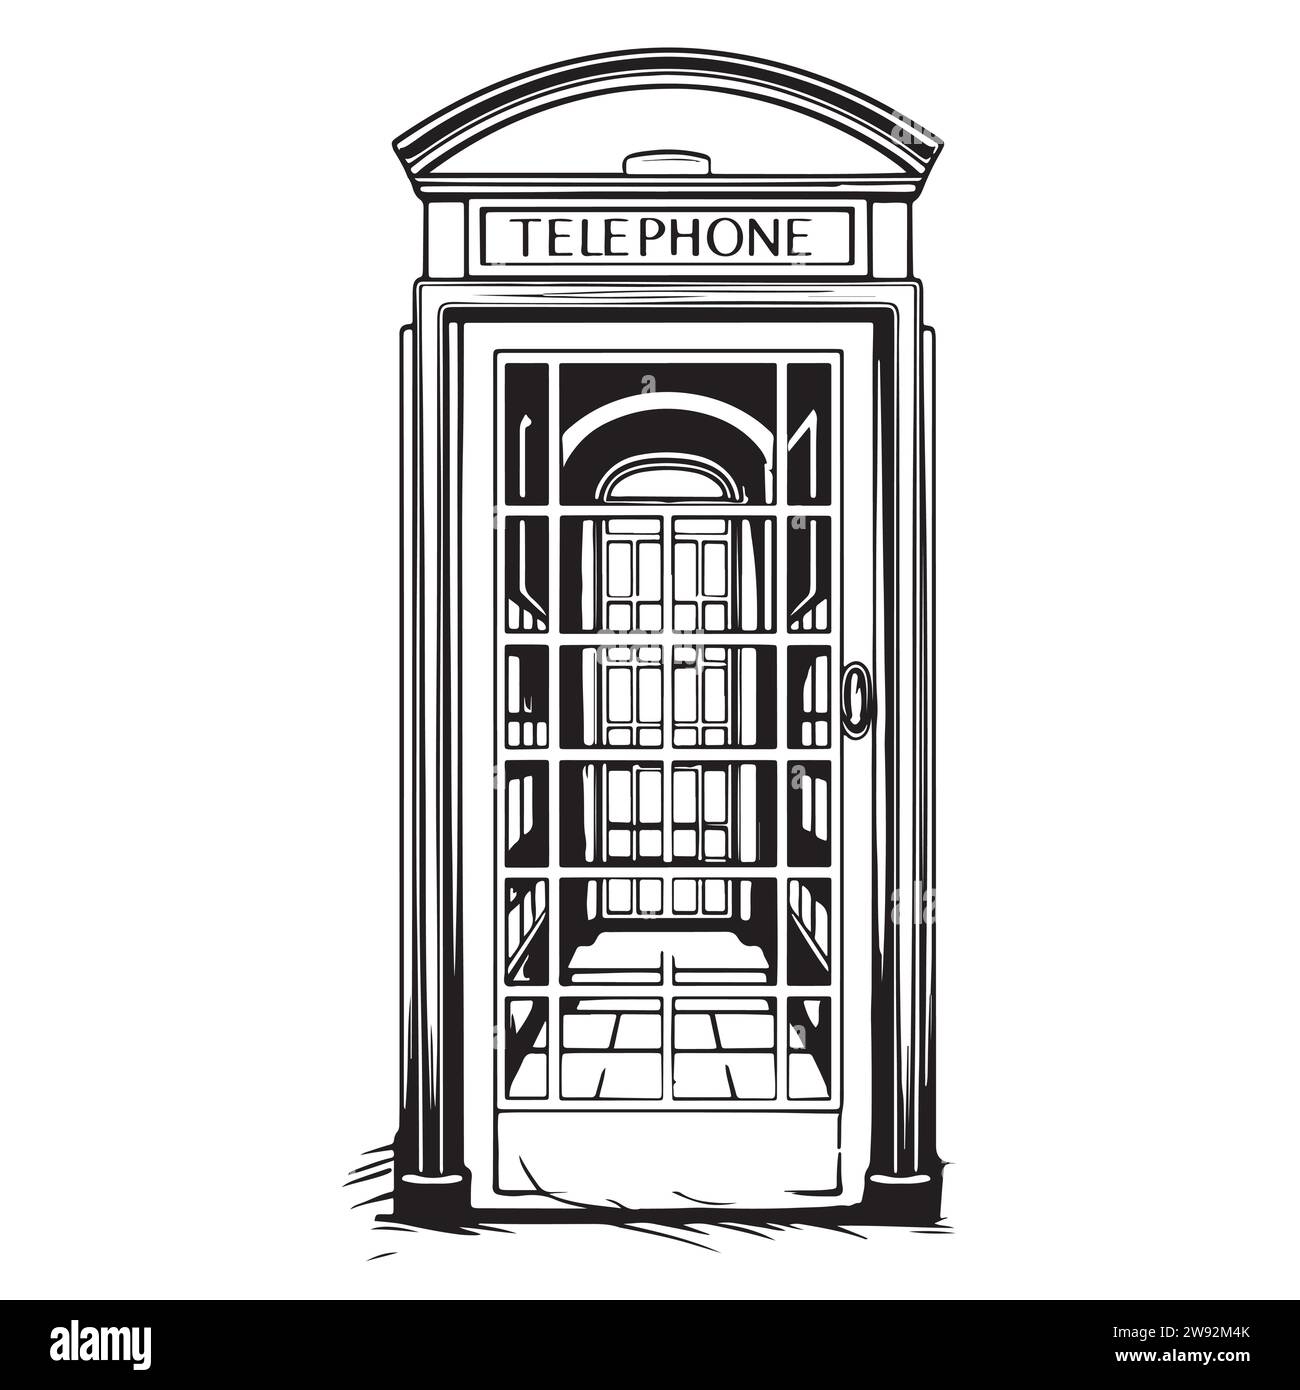 Téléphone public londonien. Illustration de croquis dessinée à la main isolée sur fond blanc. Illustration vectorielle Illustration de Vecteur